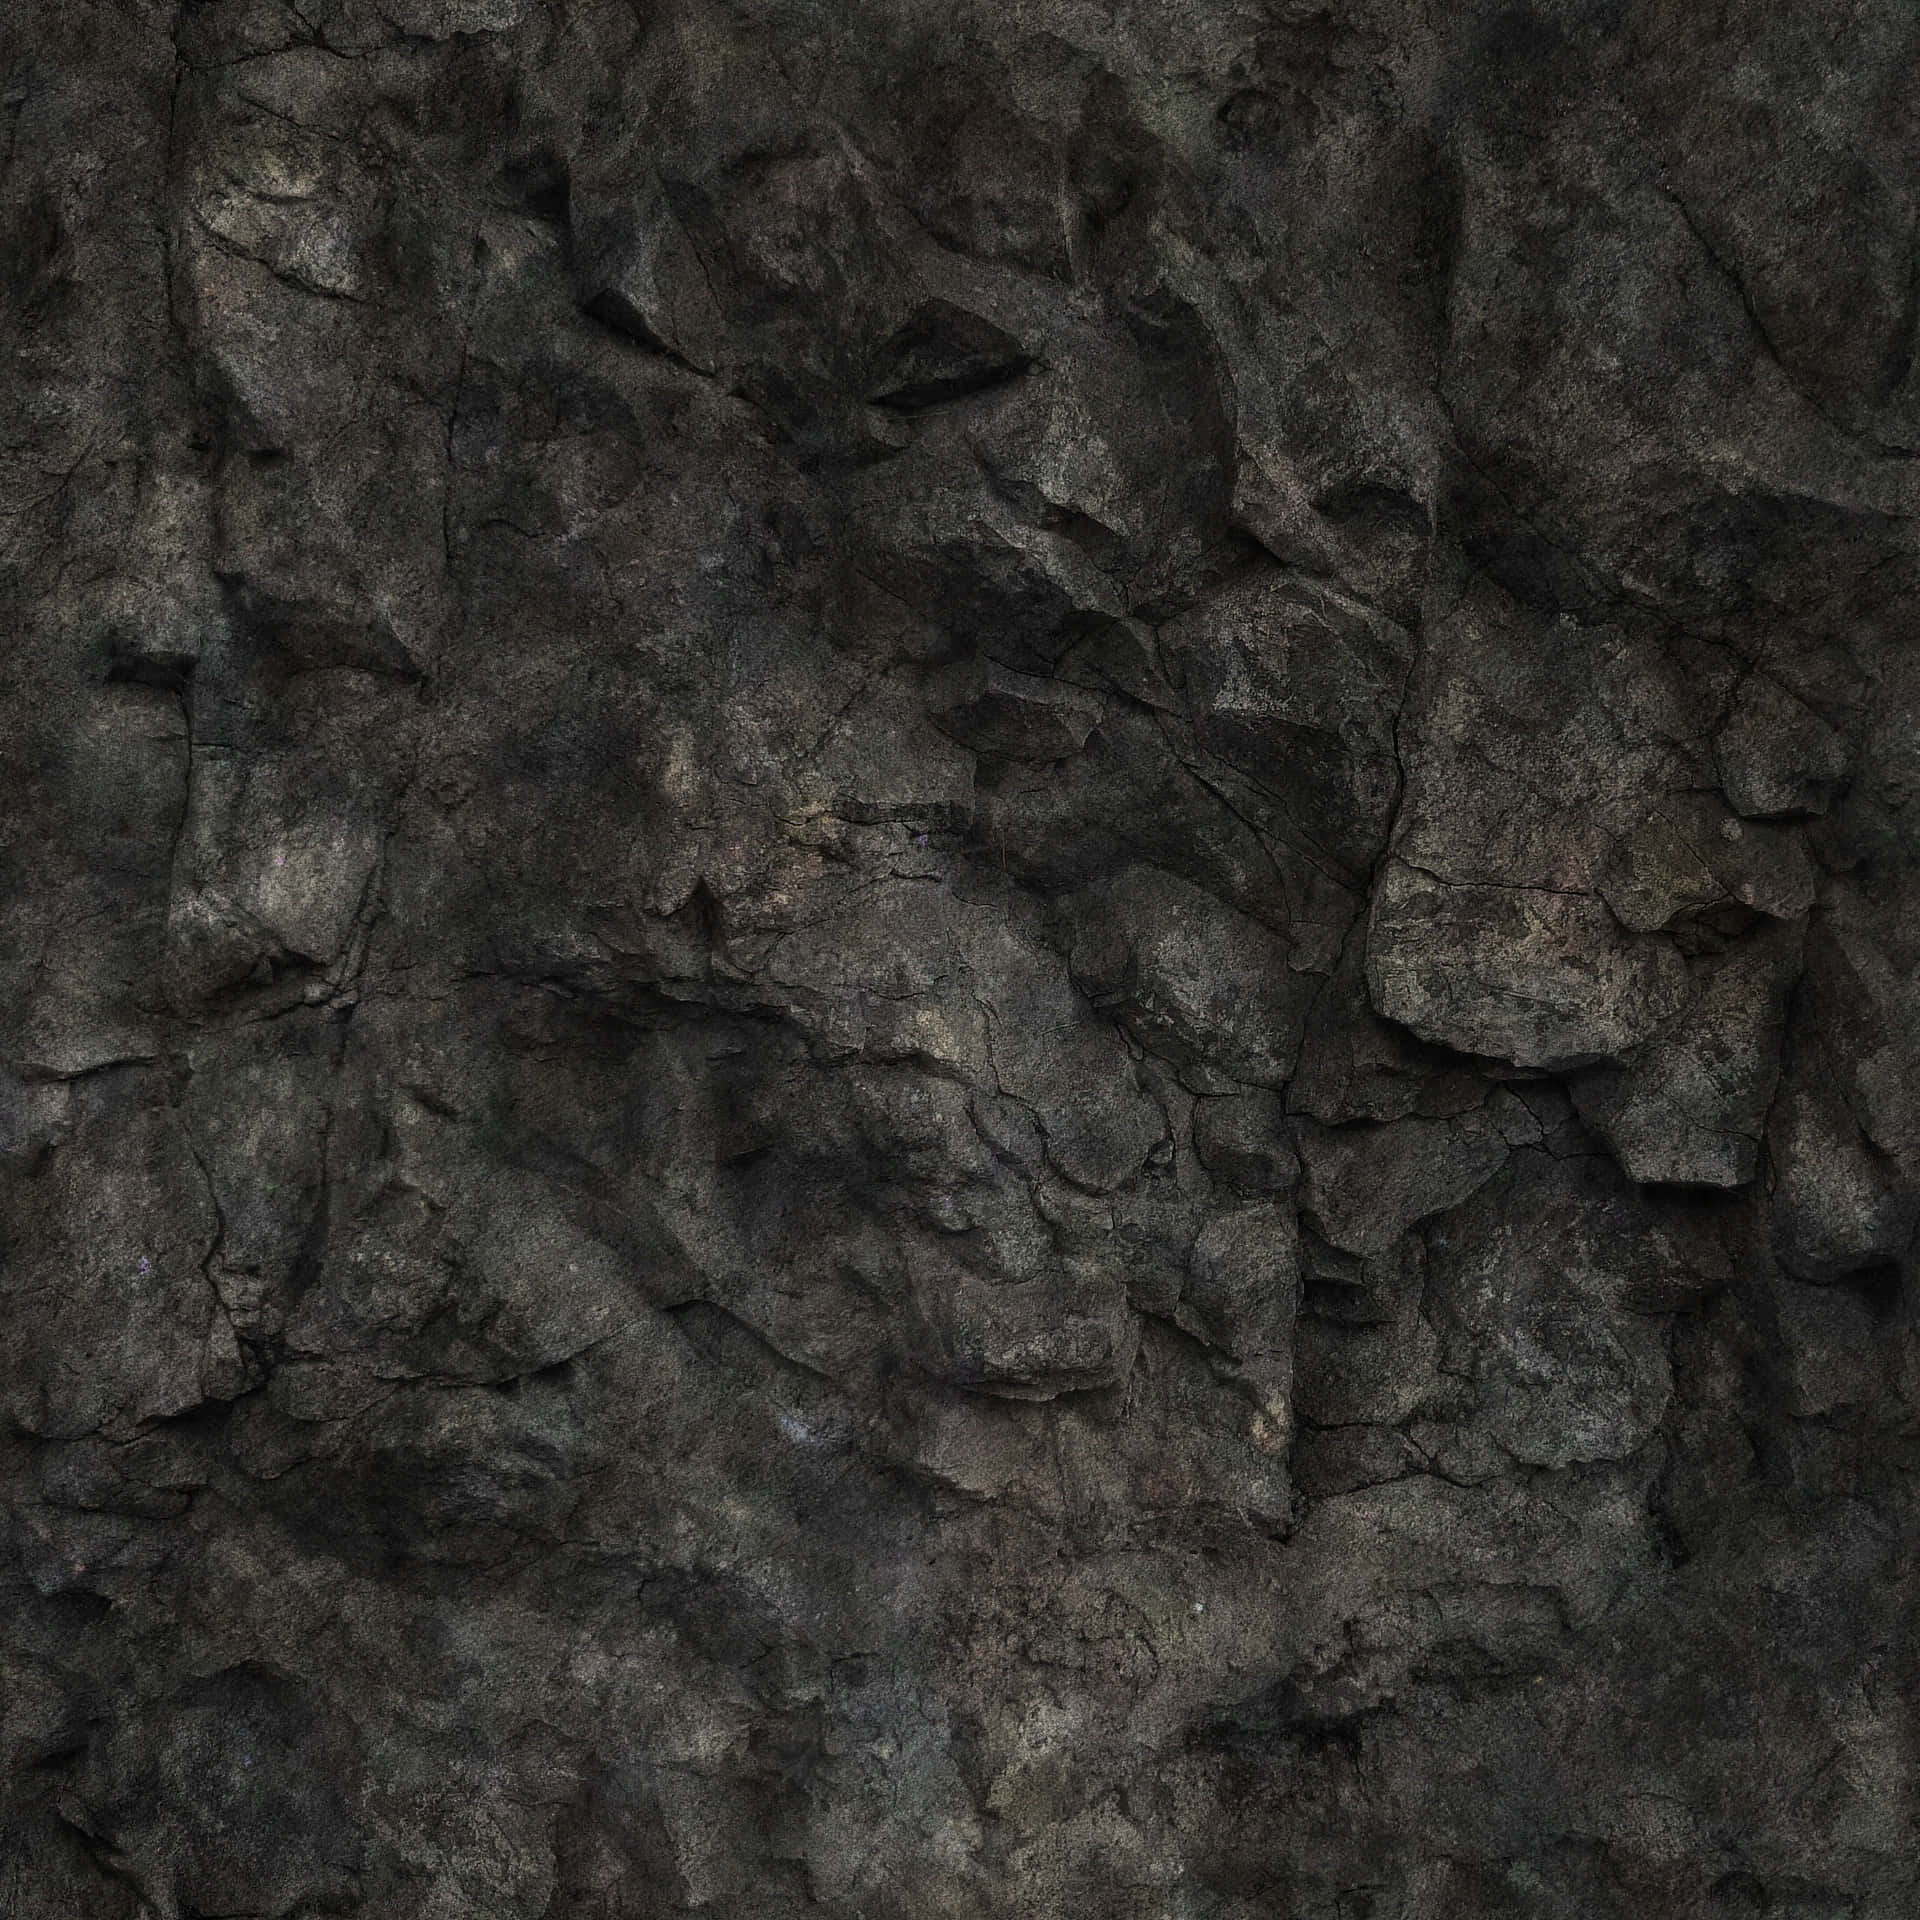 Majestic Dark Rock Landscape Wallpaper